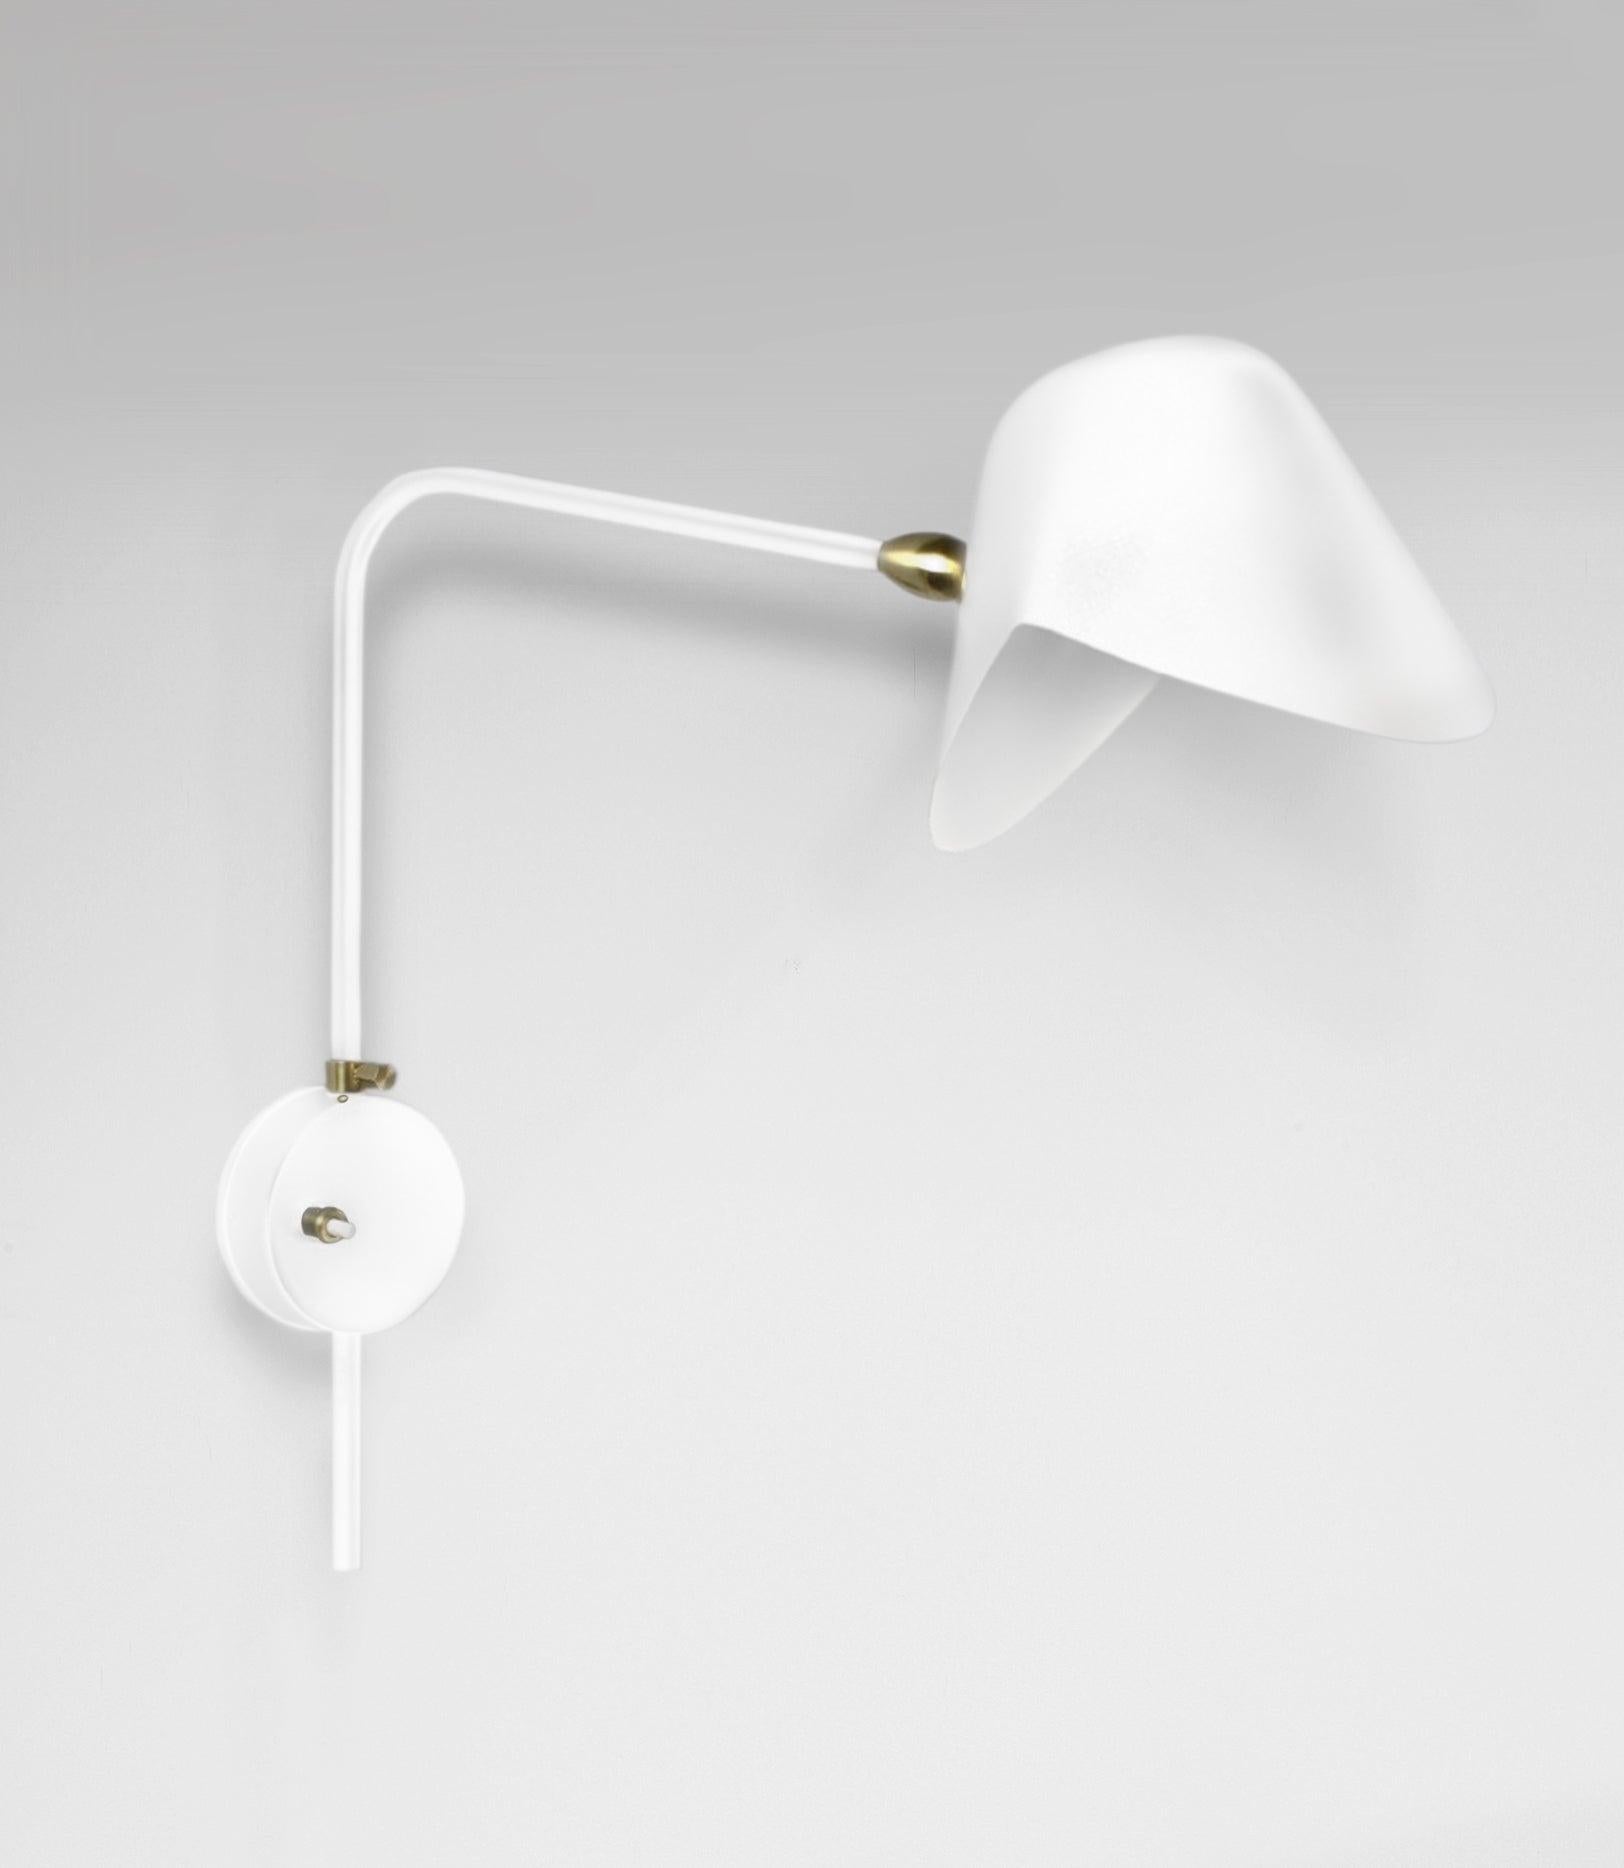 Wandleuchte Modell 'Anthony Wall Lamp With Round Fixation Box', entworfen von Serge Mouille im Jahr 1953.

Hergestellt von Editions Serge Mouille in Frankreich. Die Herstellung der Lampen, Wandleuchten und Stehlampen erfolgt in handwerklicher Weise